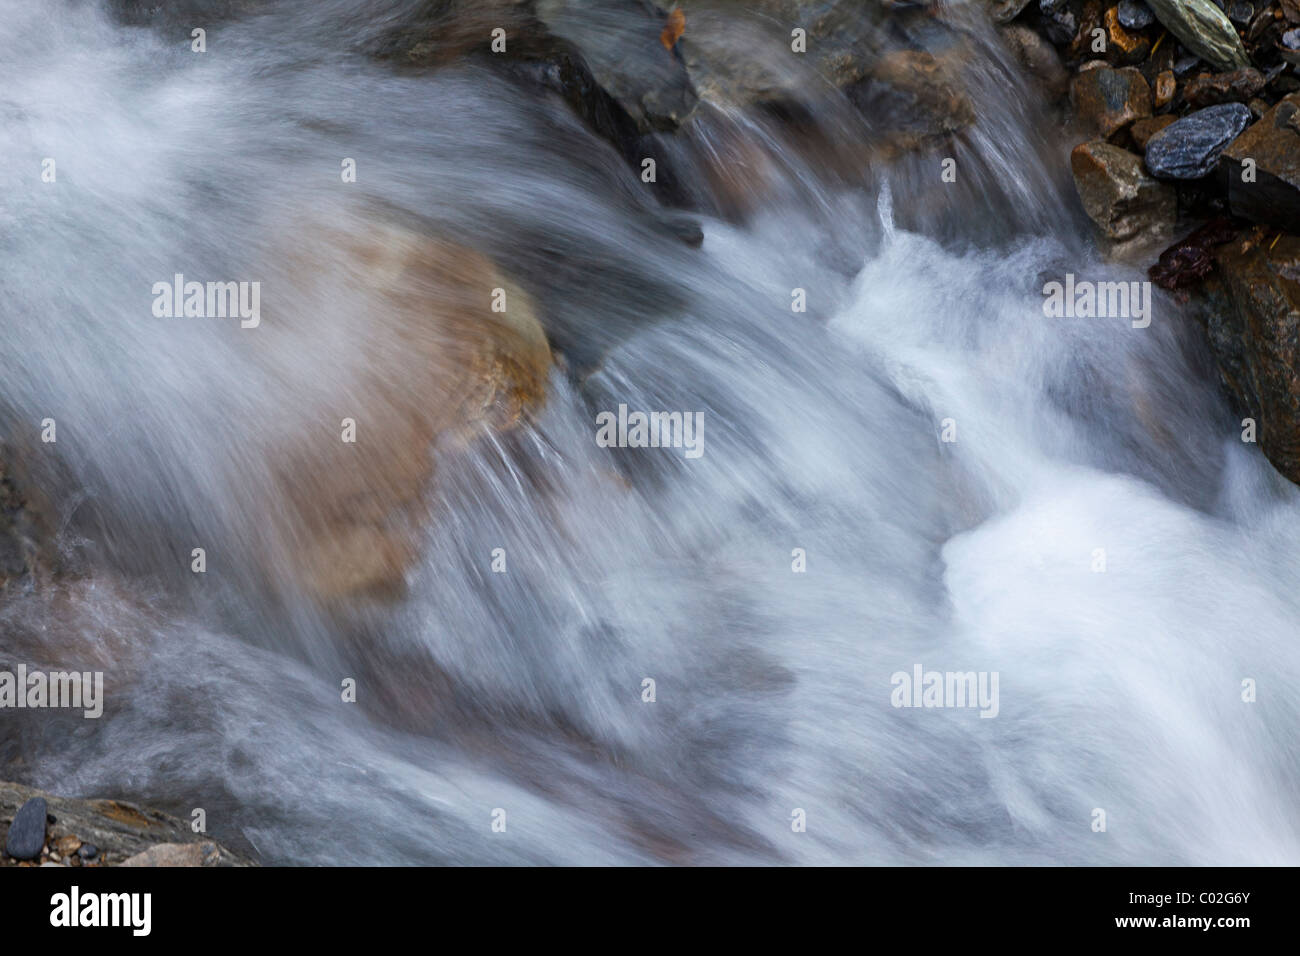 Ruisseau de montagne au débit rapide, Andorre Banque D'Images